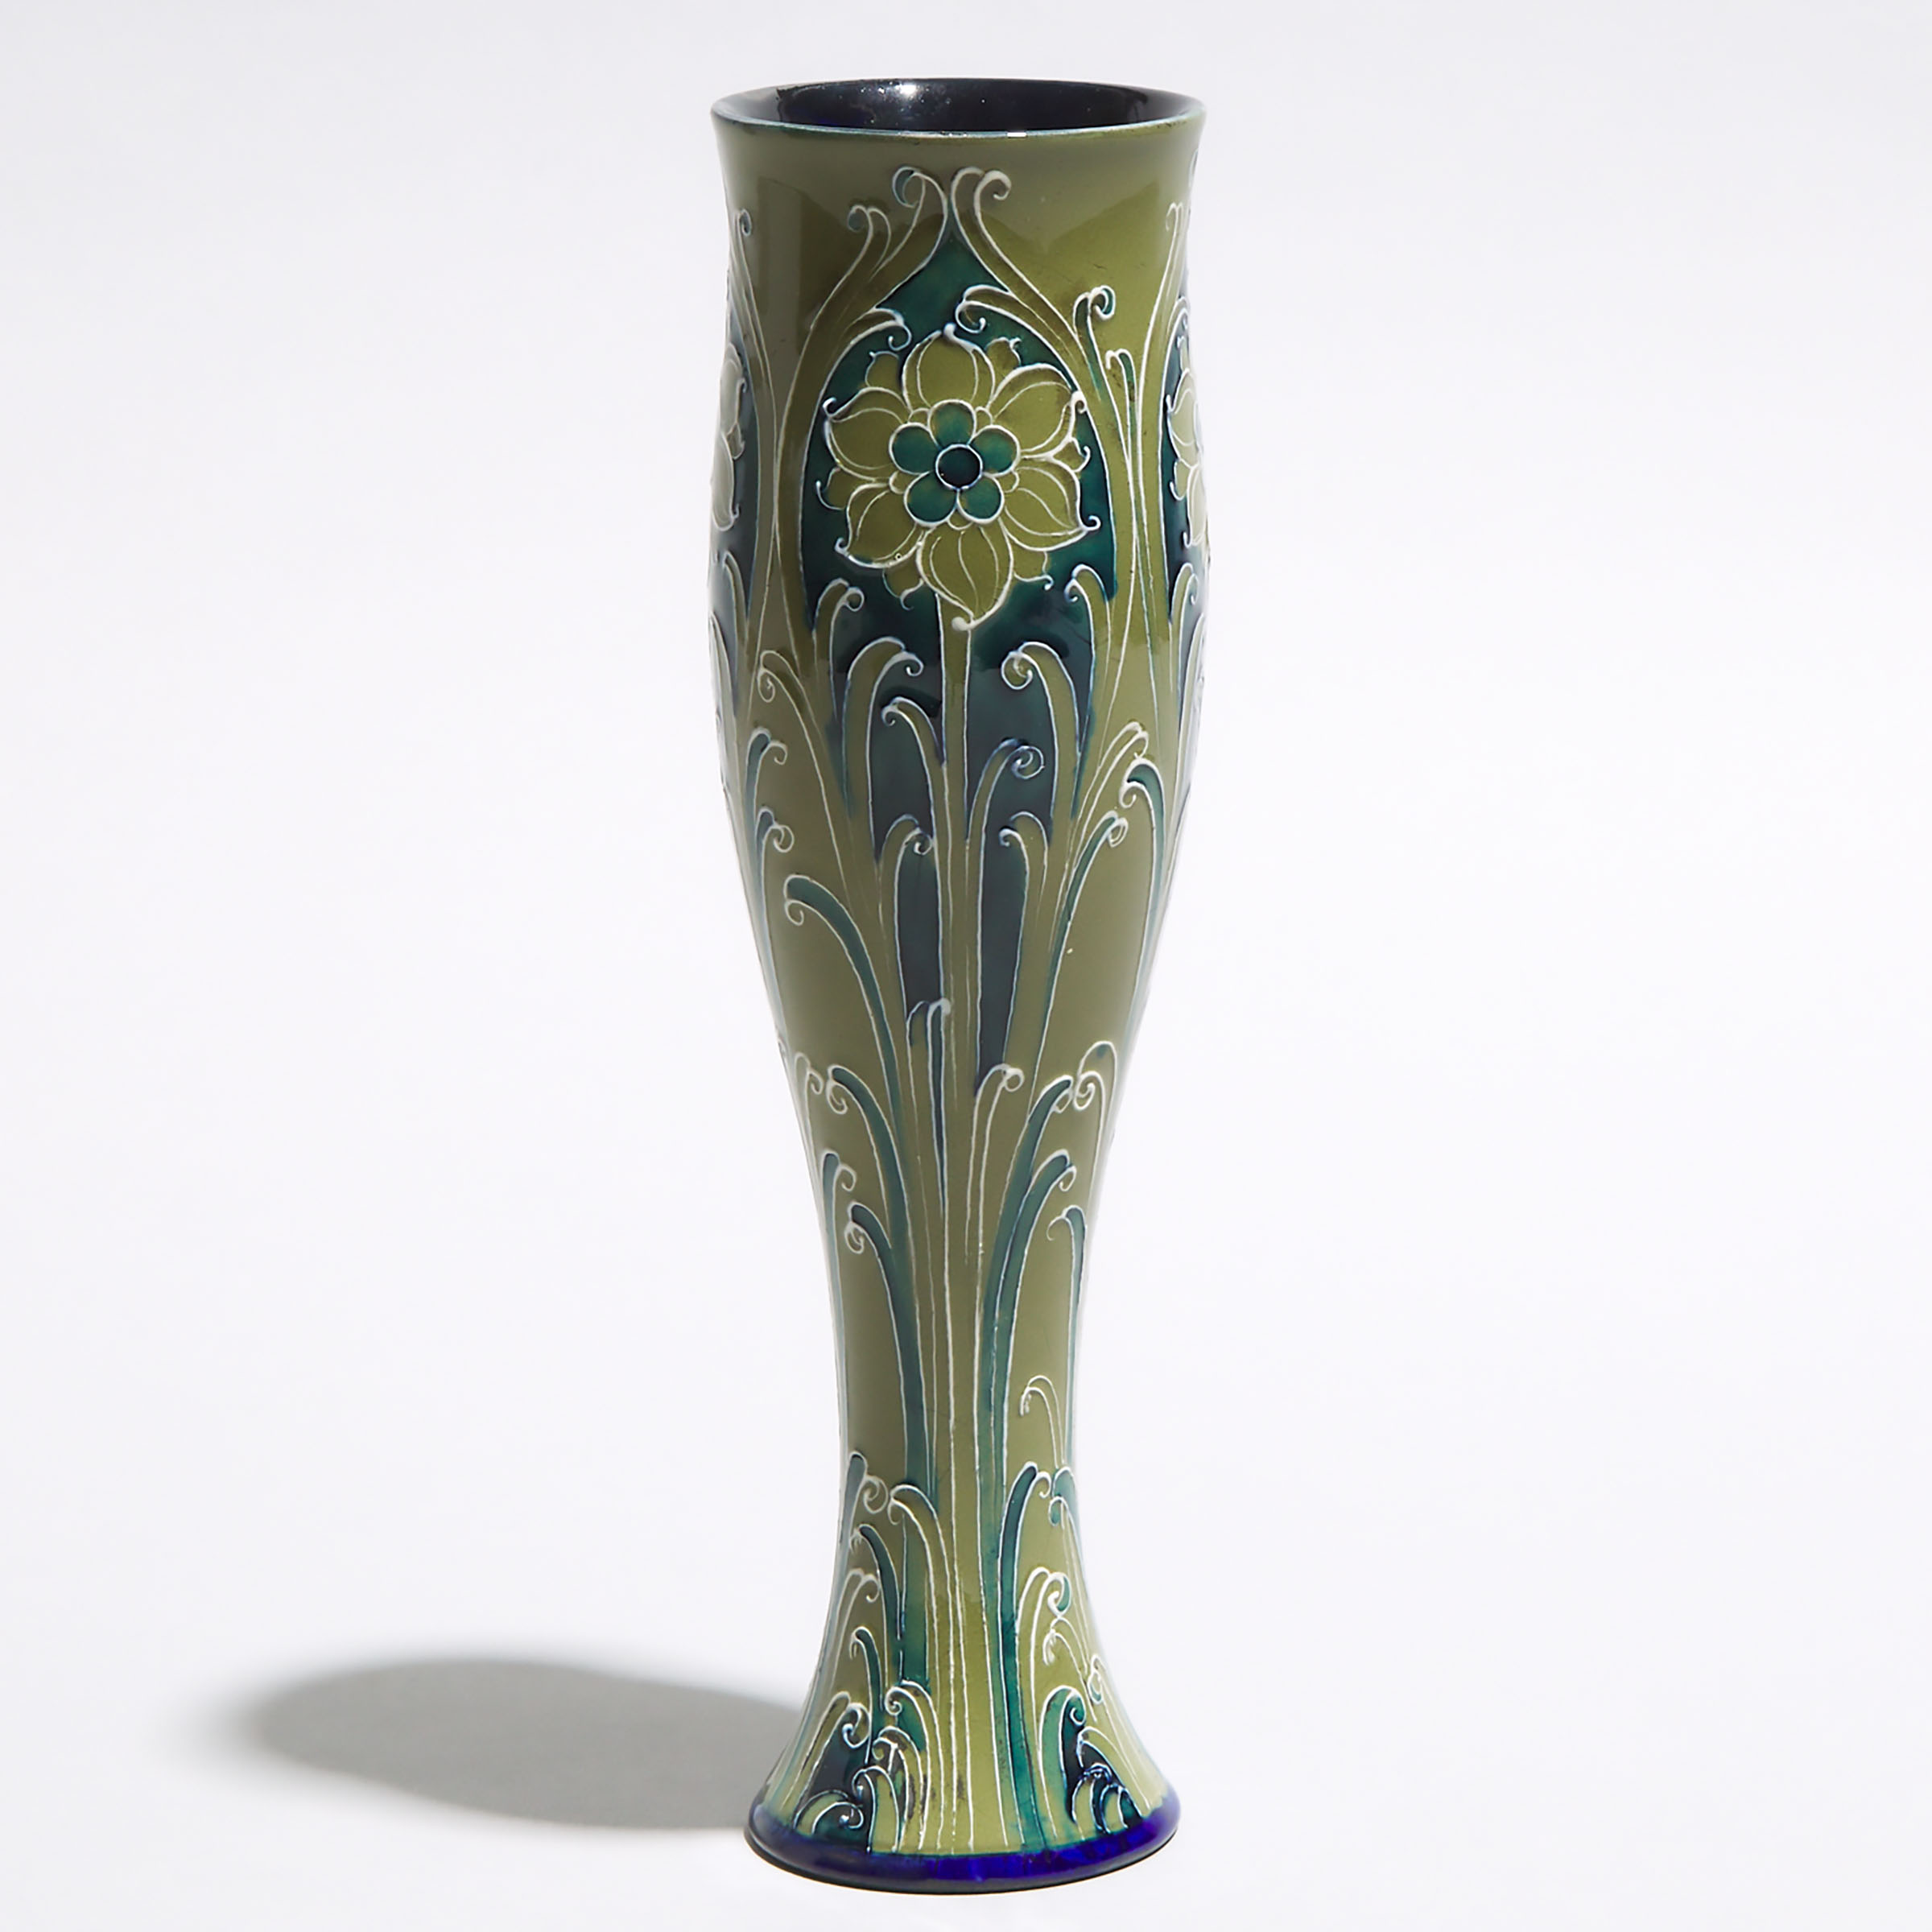 Macintyre Moorcroft Florian Vase, c.1902-4